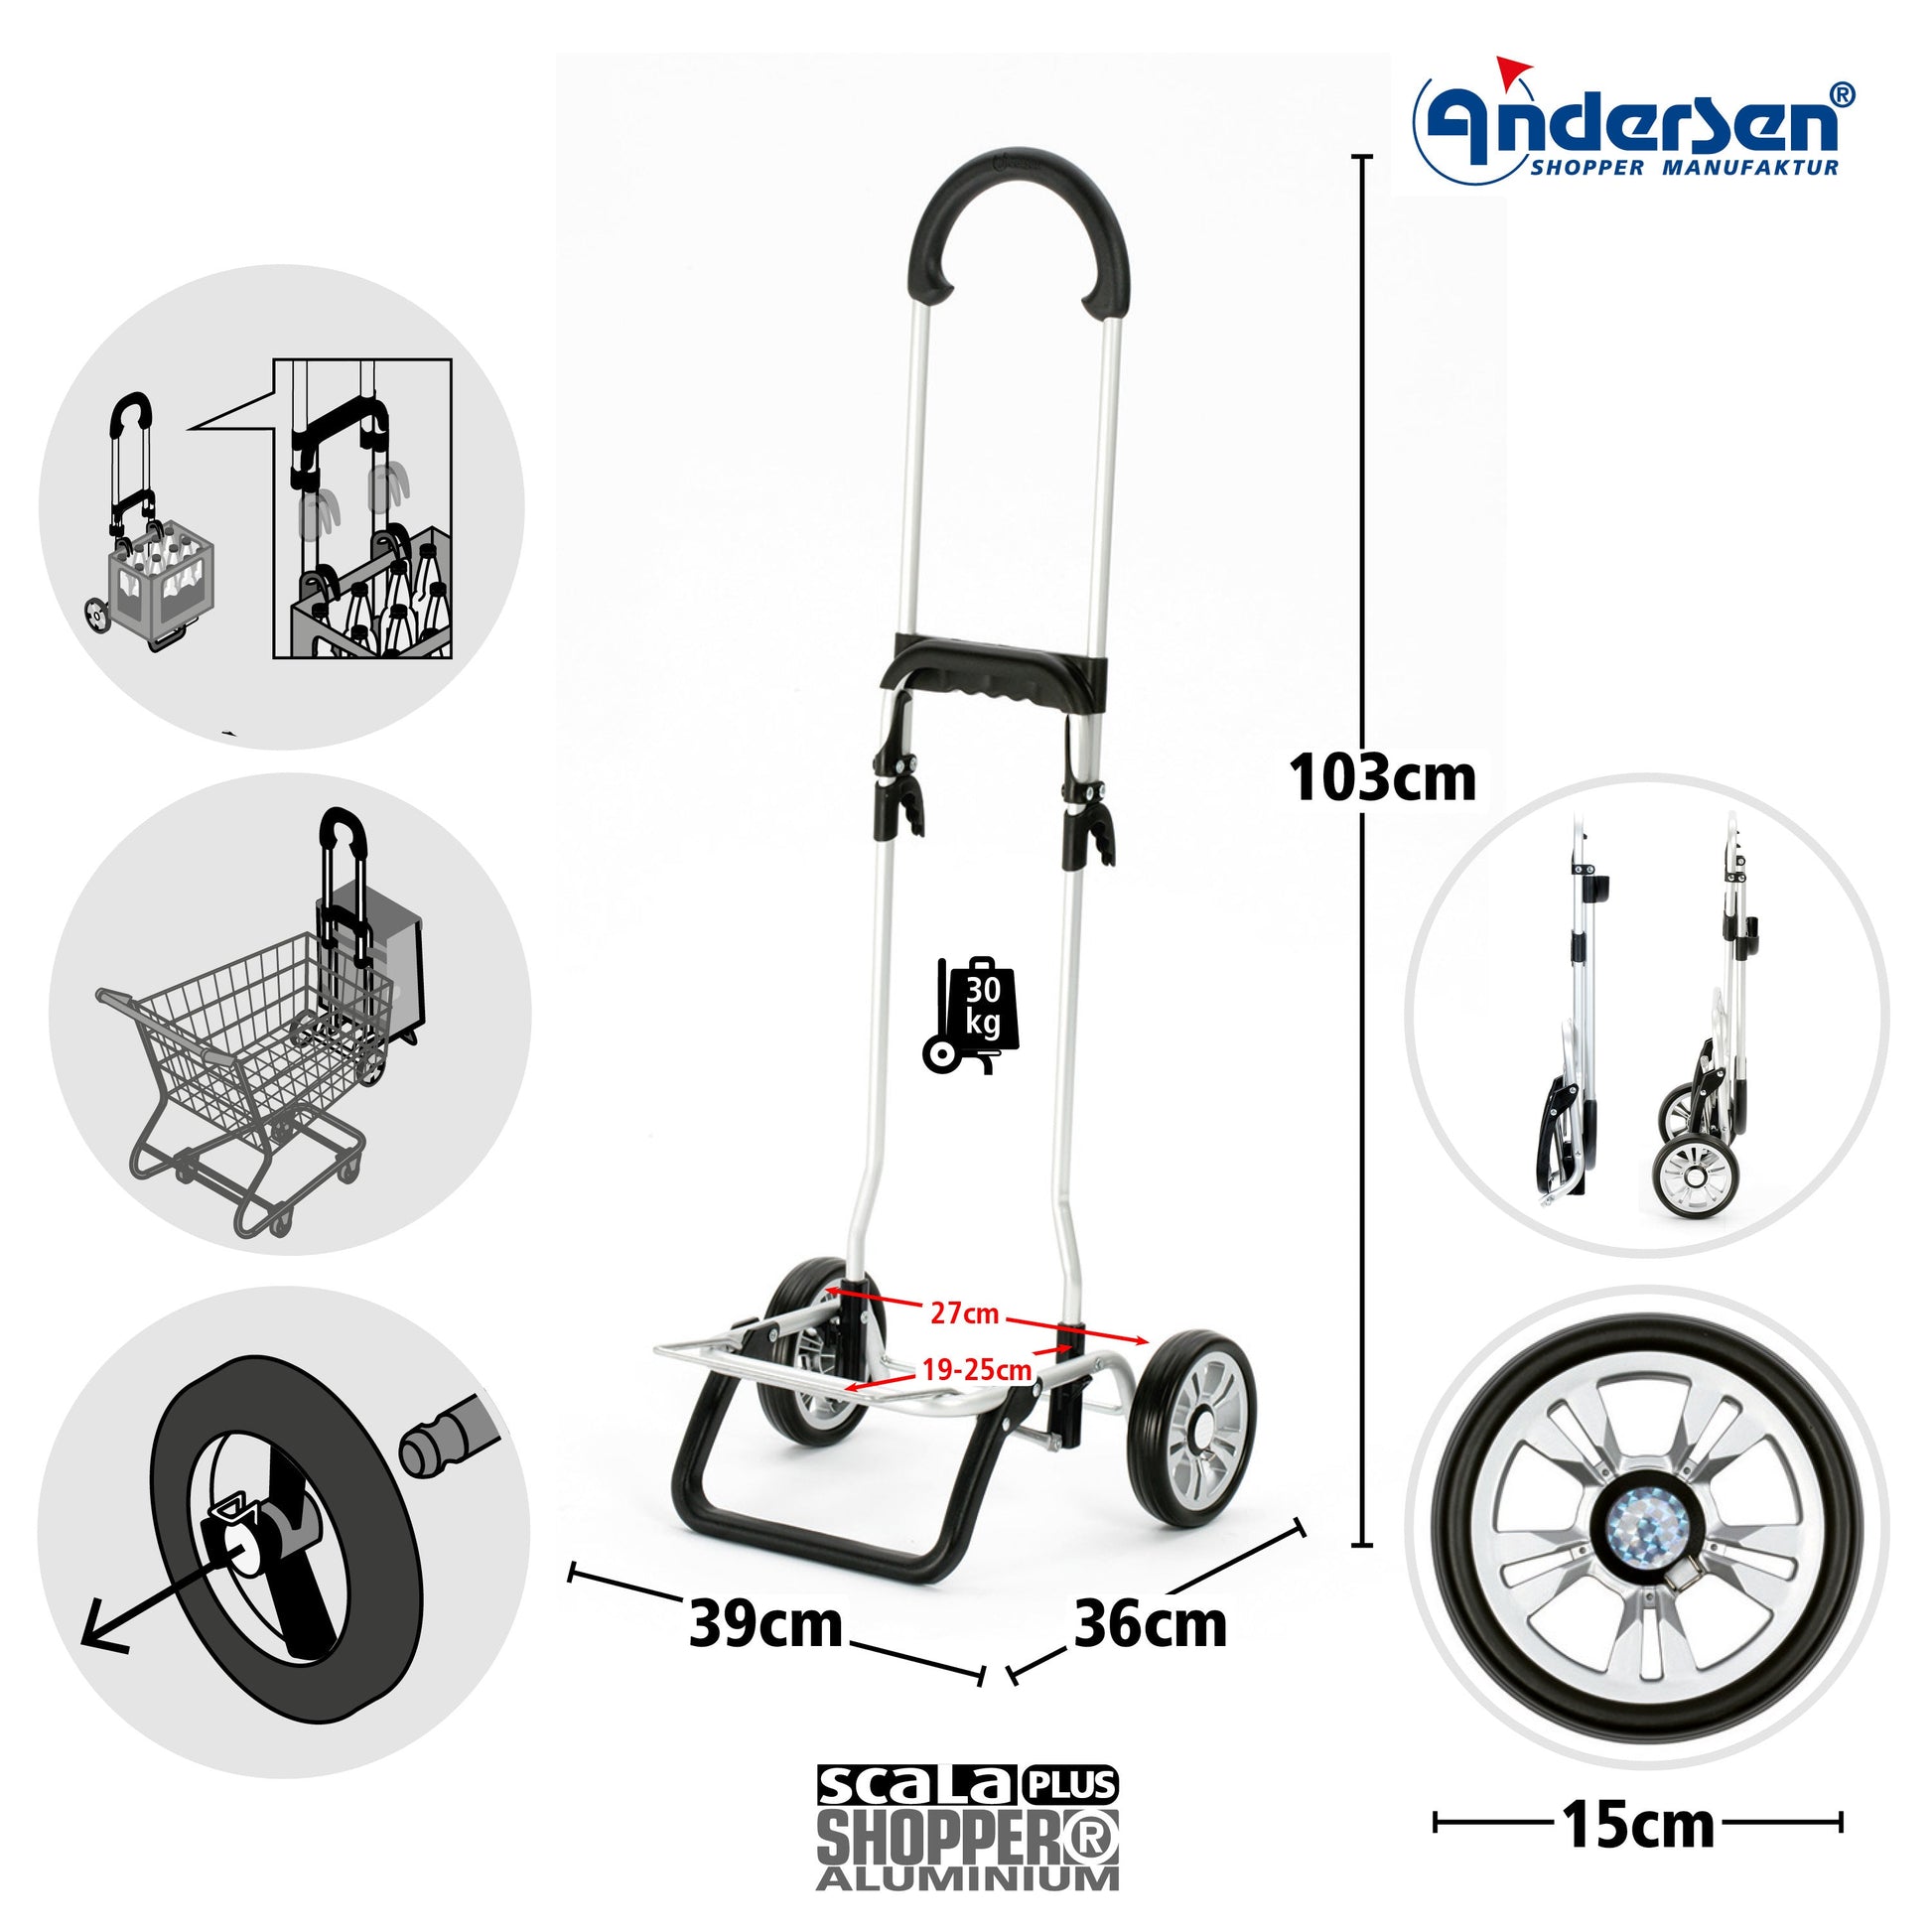 Andersen Shopper Manufaktur-Scala Shopper Plus Hente mint-www.shopping-trolley.ch-bild2